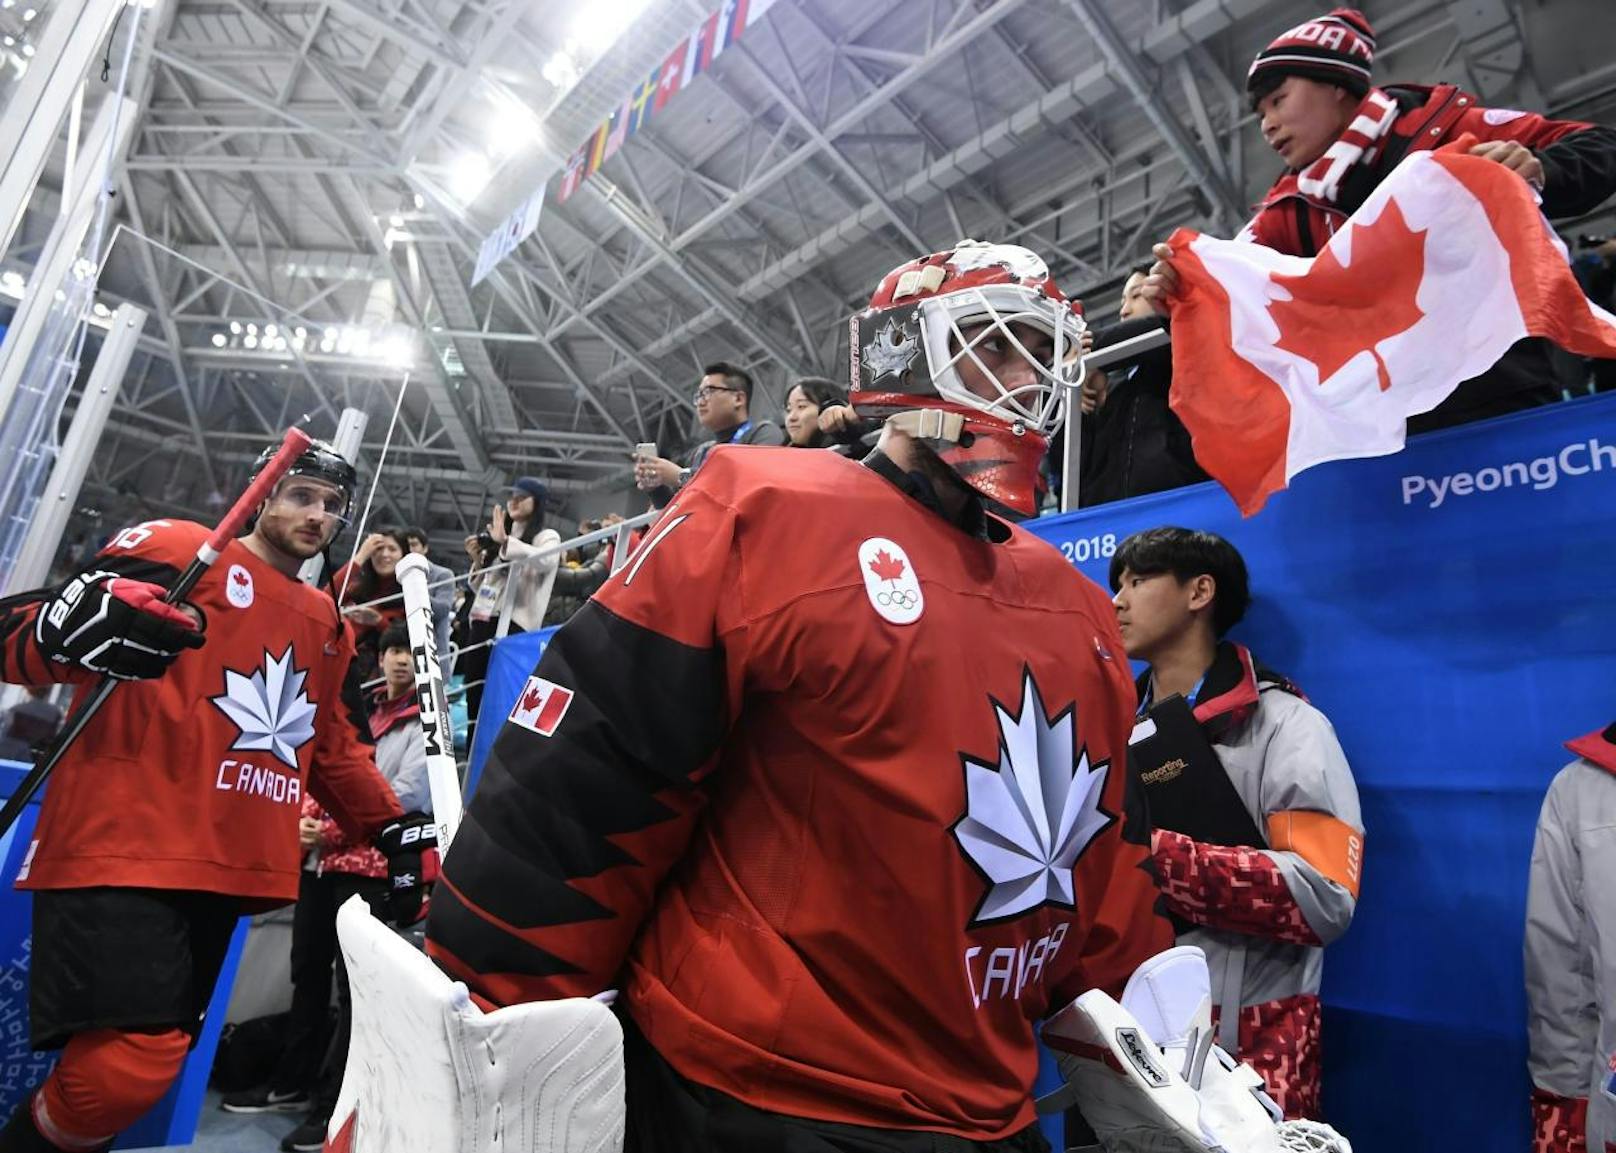 Kanadas Eishockey-Drama! 2010 und 2014 holten die Kanadier jeweils die Olympische Goldmedaille im Eishockey. Auf dem Weg dorthin scheiterten die Cracks in Pyeongchang allerdings am Sensationsteam Deutschland mit 3:4.